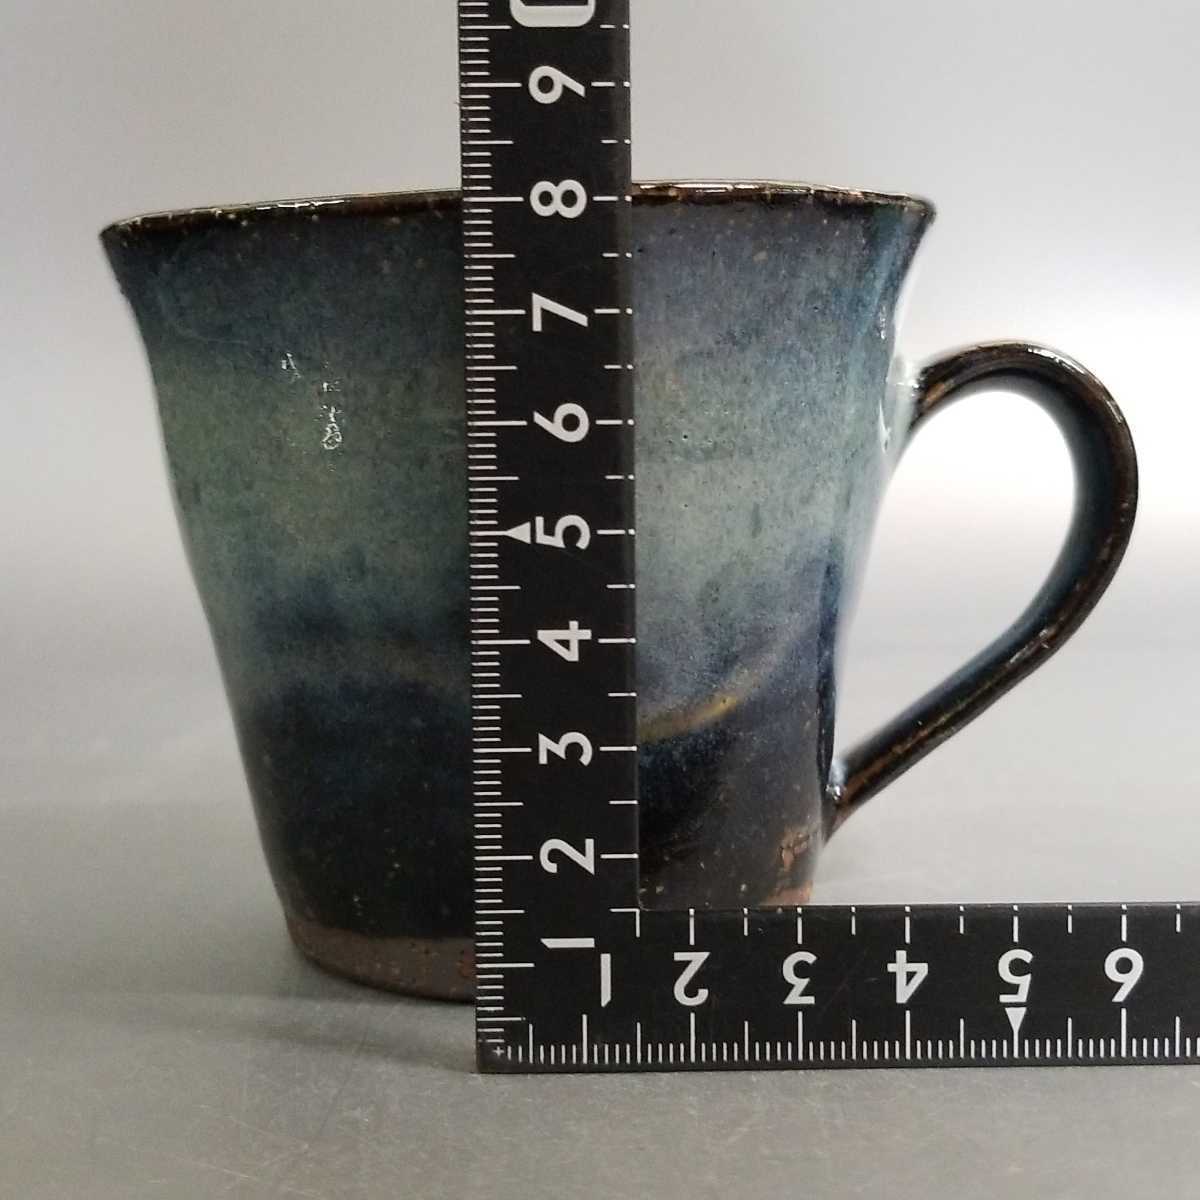 .71) Hagi . гора корень Kiyoshi . синий Hagi кружка кофейная чашка .. контейнер не использовался новый товар включение в покупку приветствуется 